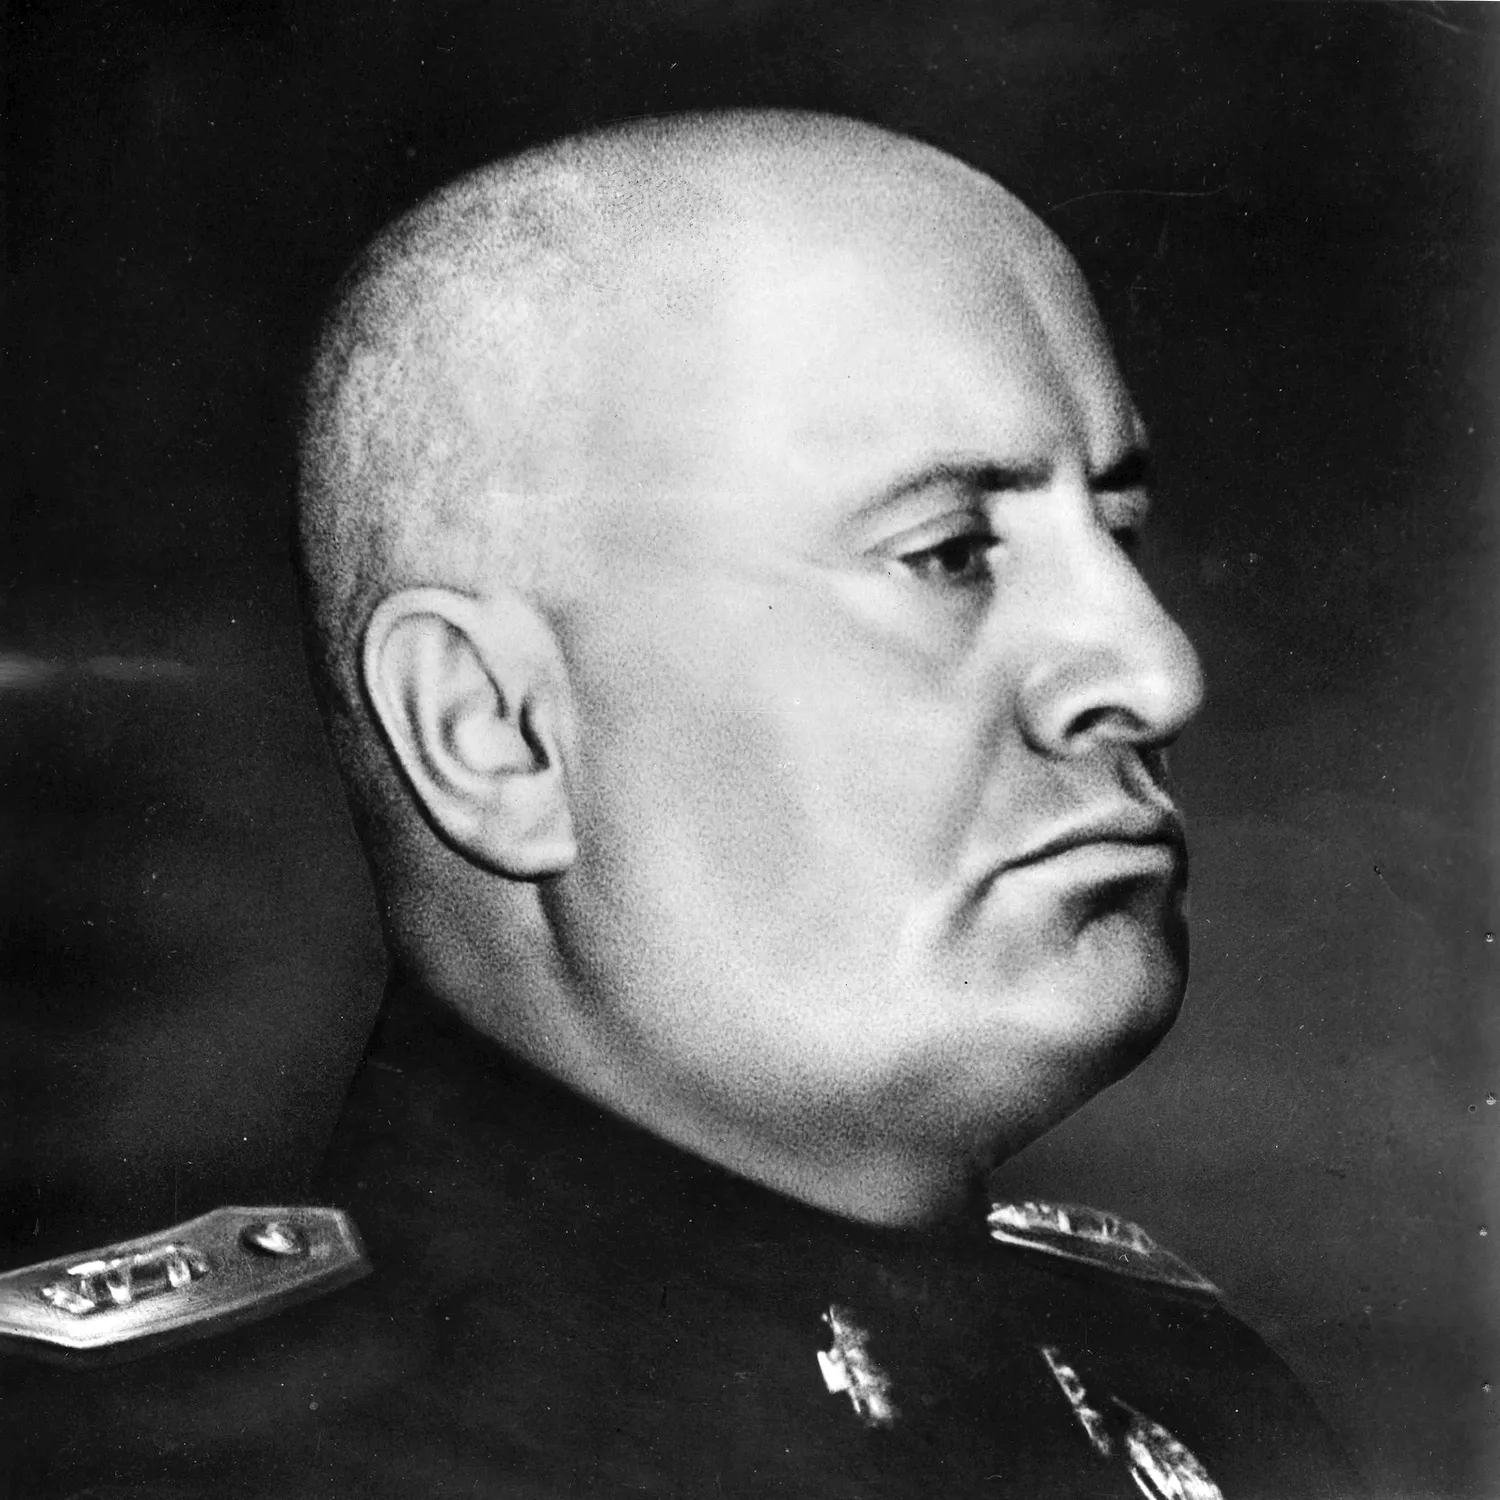 Бенито Муссолини